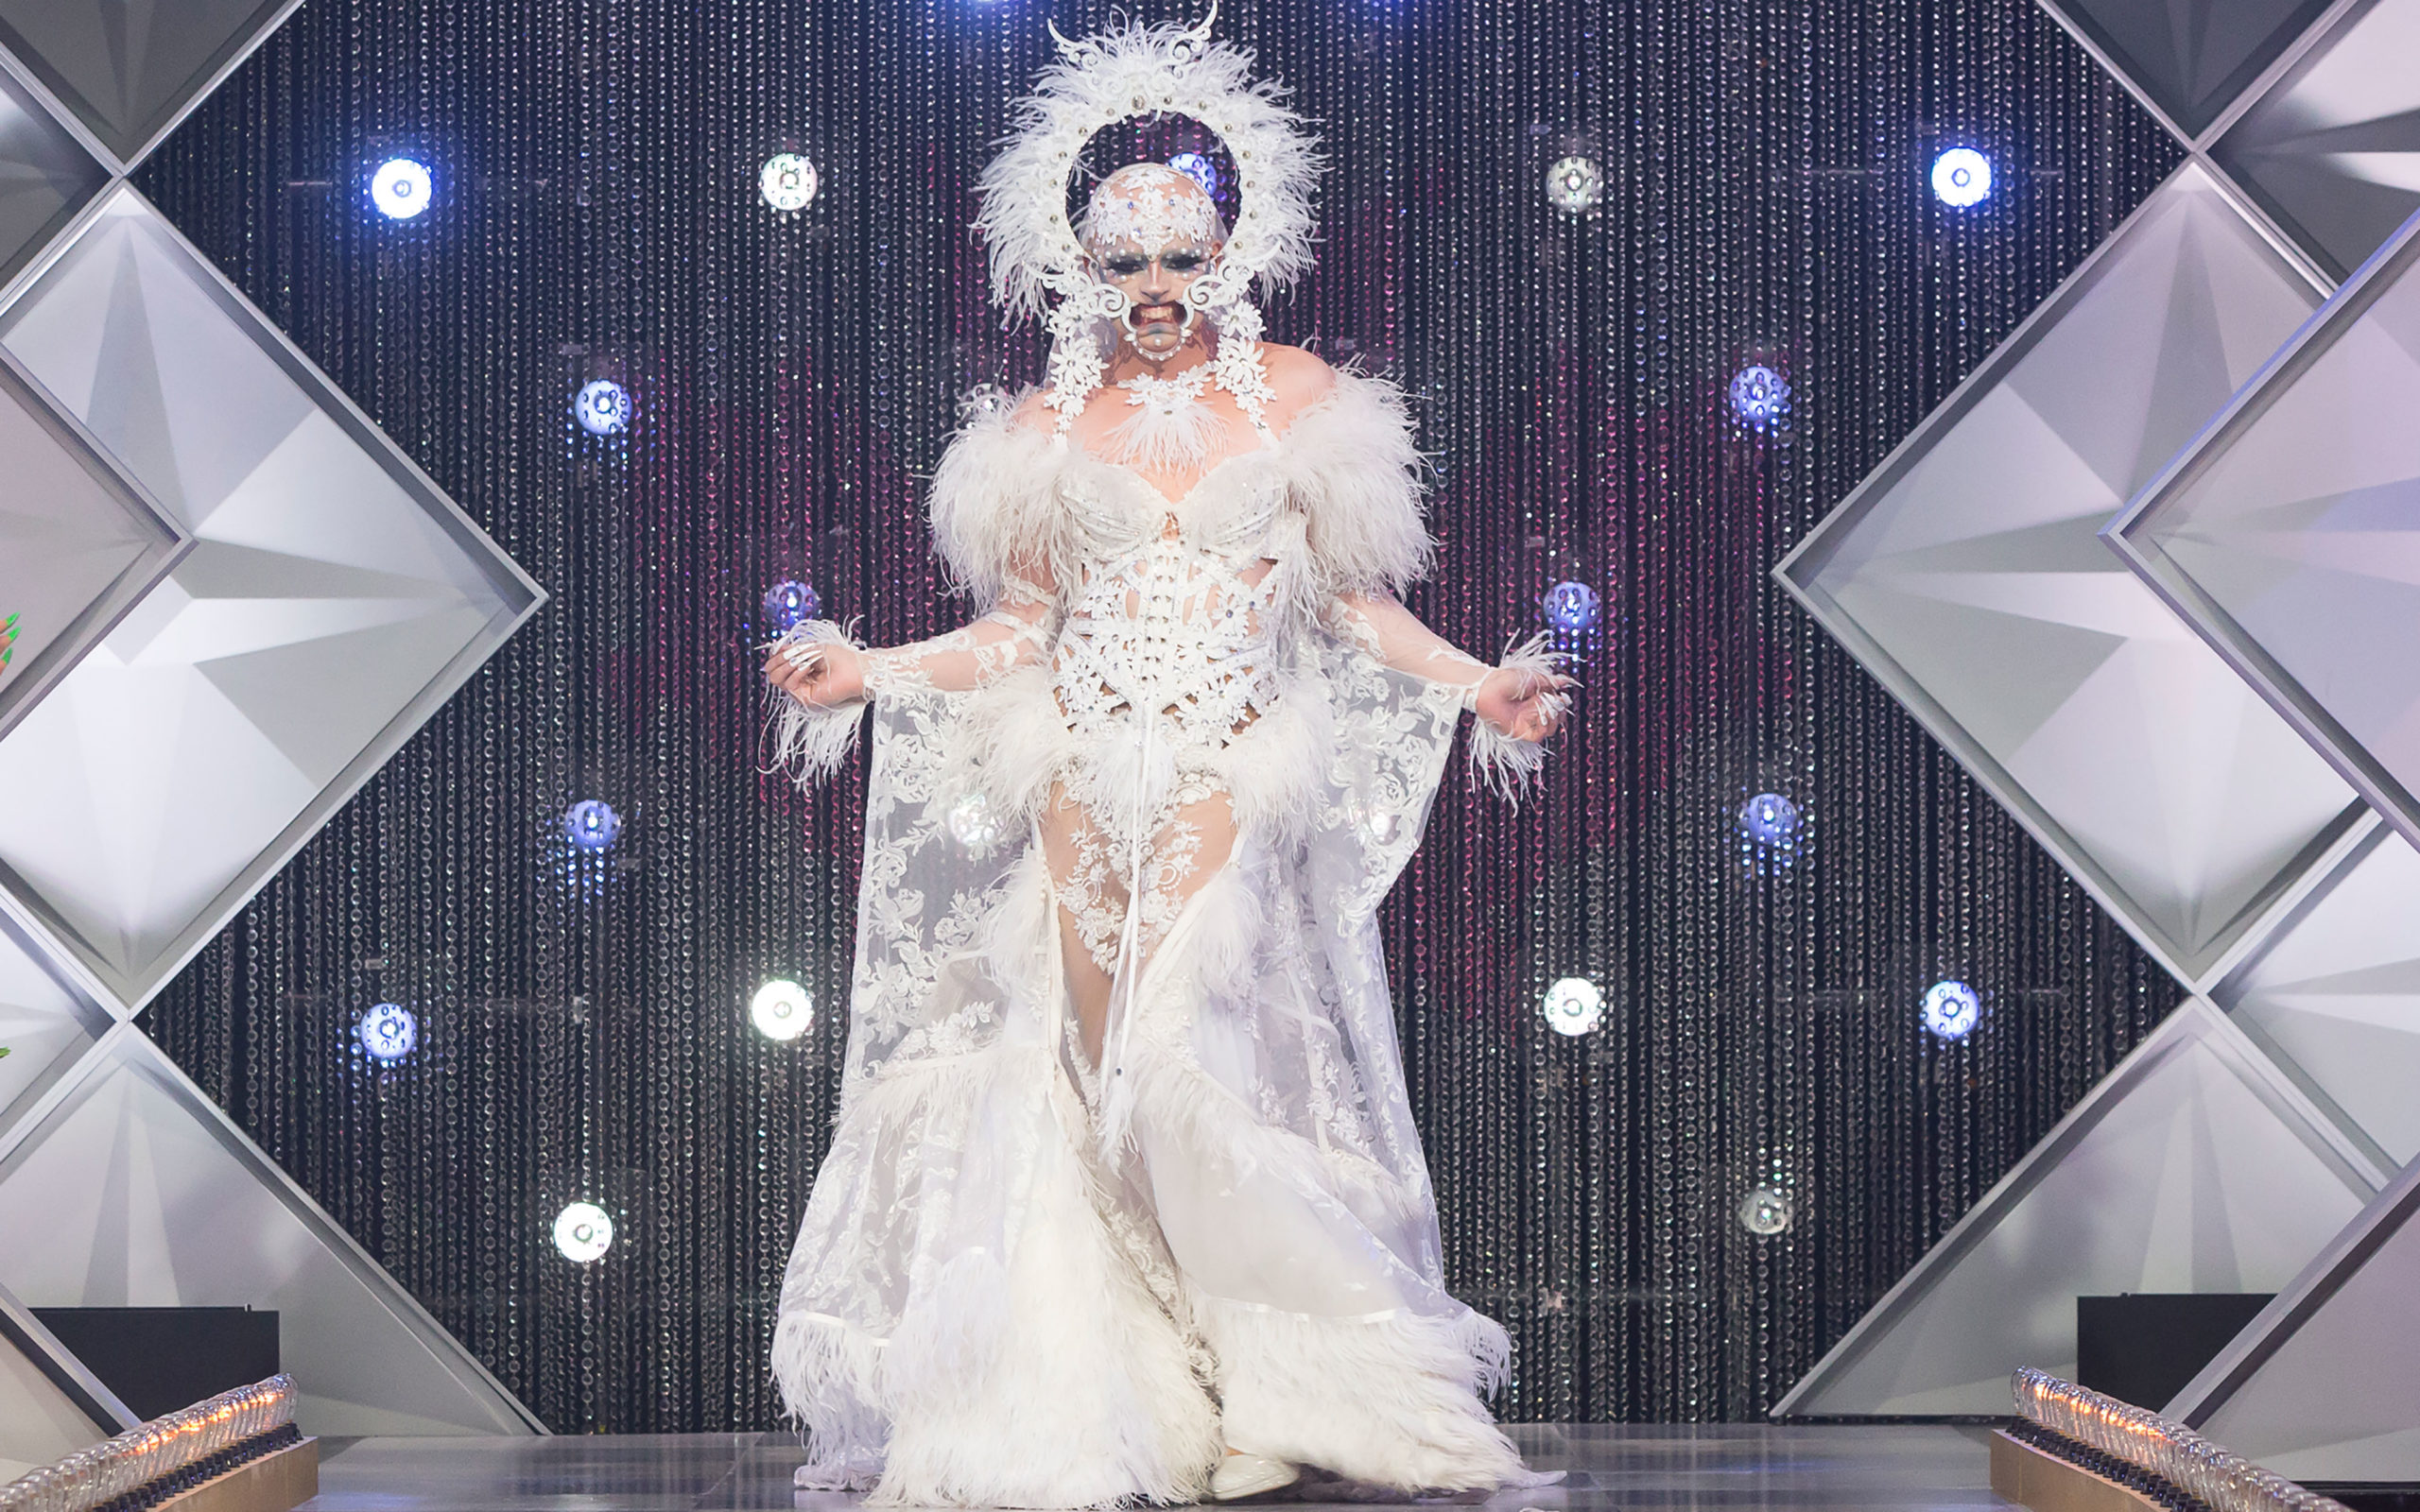 Cena da segunda temporada de Canada’s Drag Race, mostra a drag queen Icesis Couture desfilando pela passarela. Ela é branca, careca e usa roupas brancas, com uma espécie de aparelho bucal que abre sua boca mostrando a gengiva. O visual ainda tem uma auréola acima da cabeça.